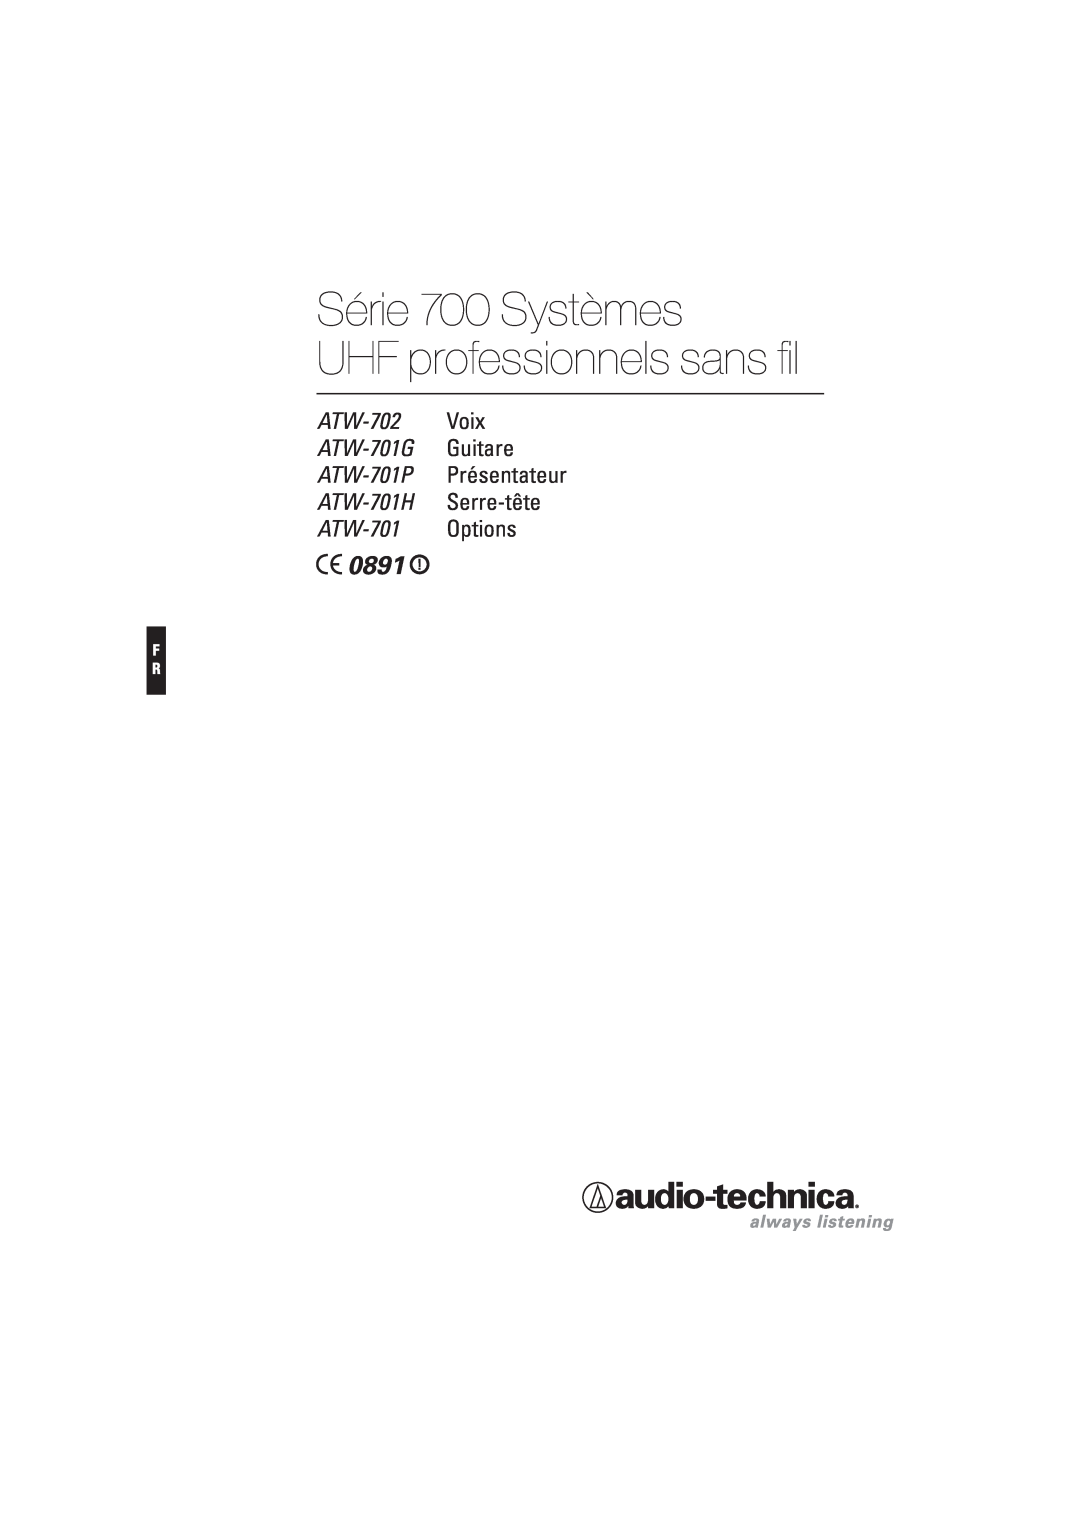 Audio-Technica Série 700 Systèmes UHF professionnels sans fil, ATW-702 Voix ATW-701G Guitare, 0891, ATW-701 Options 